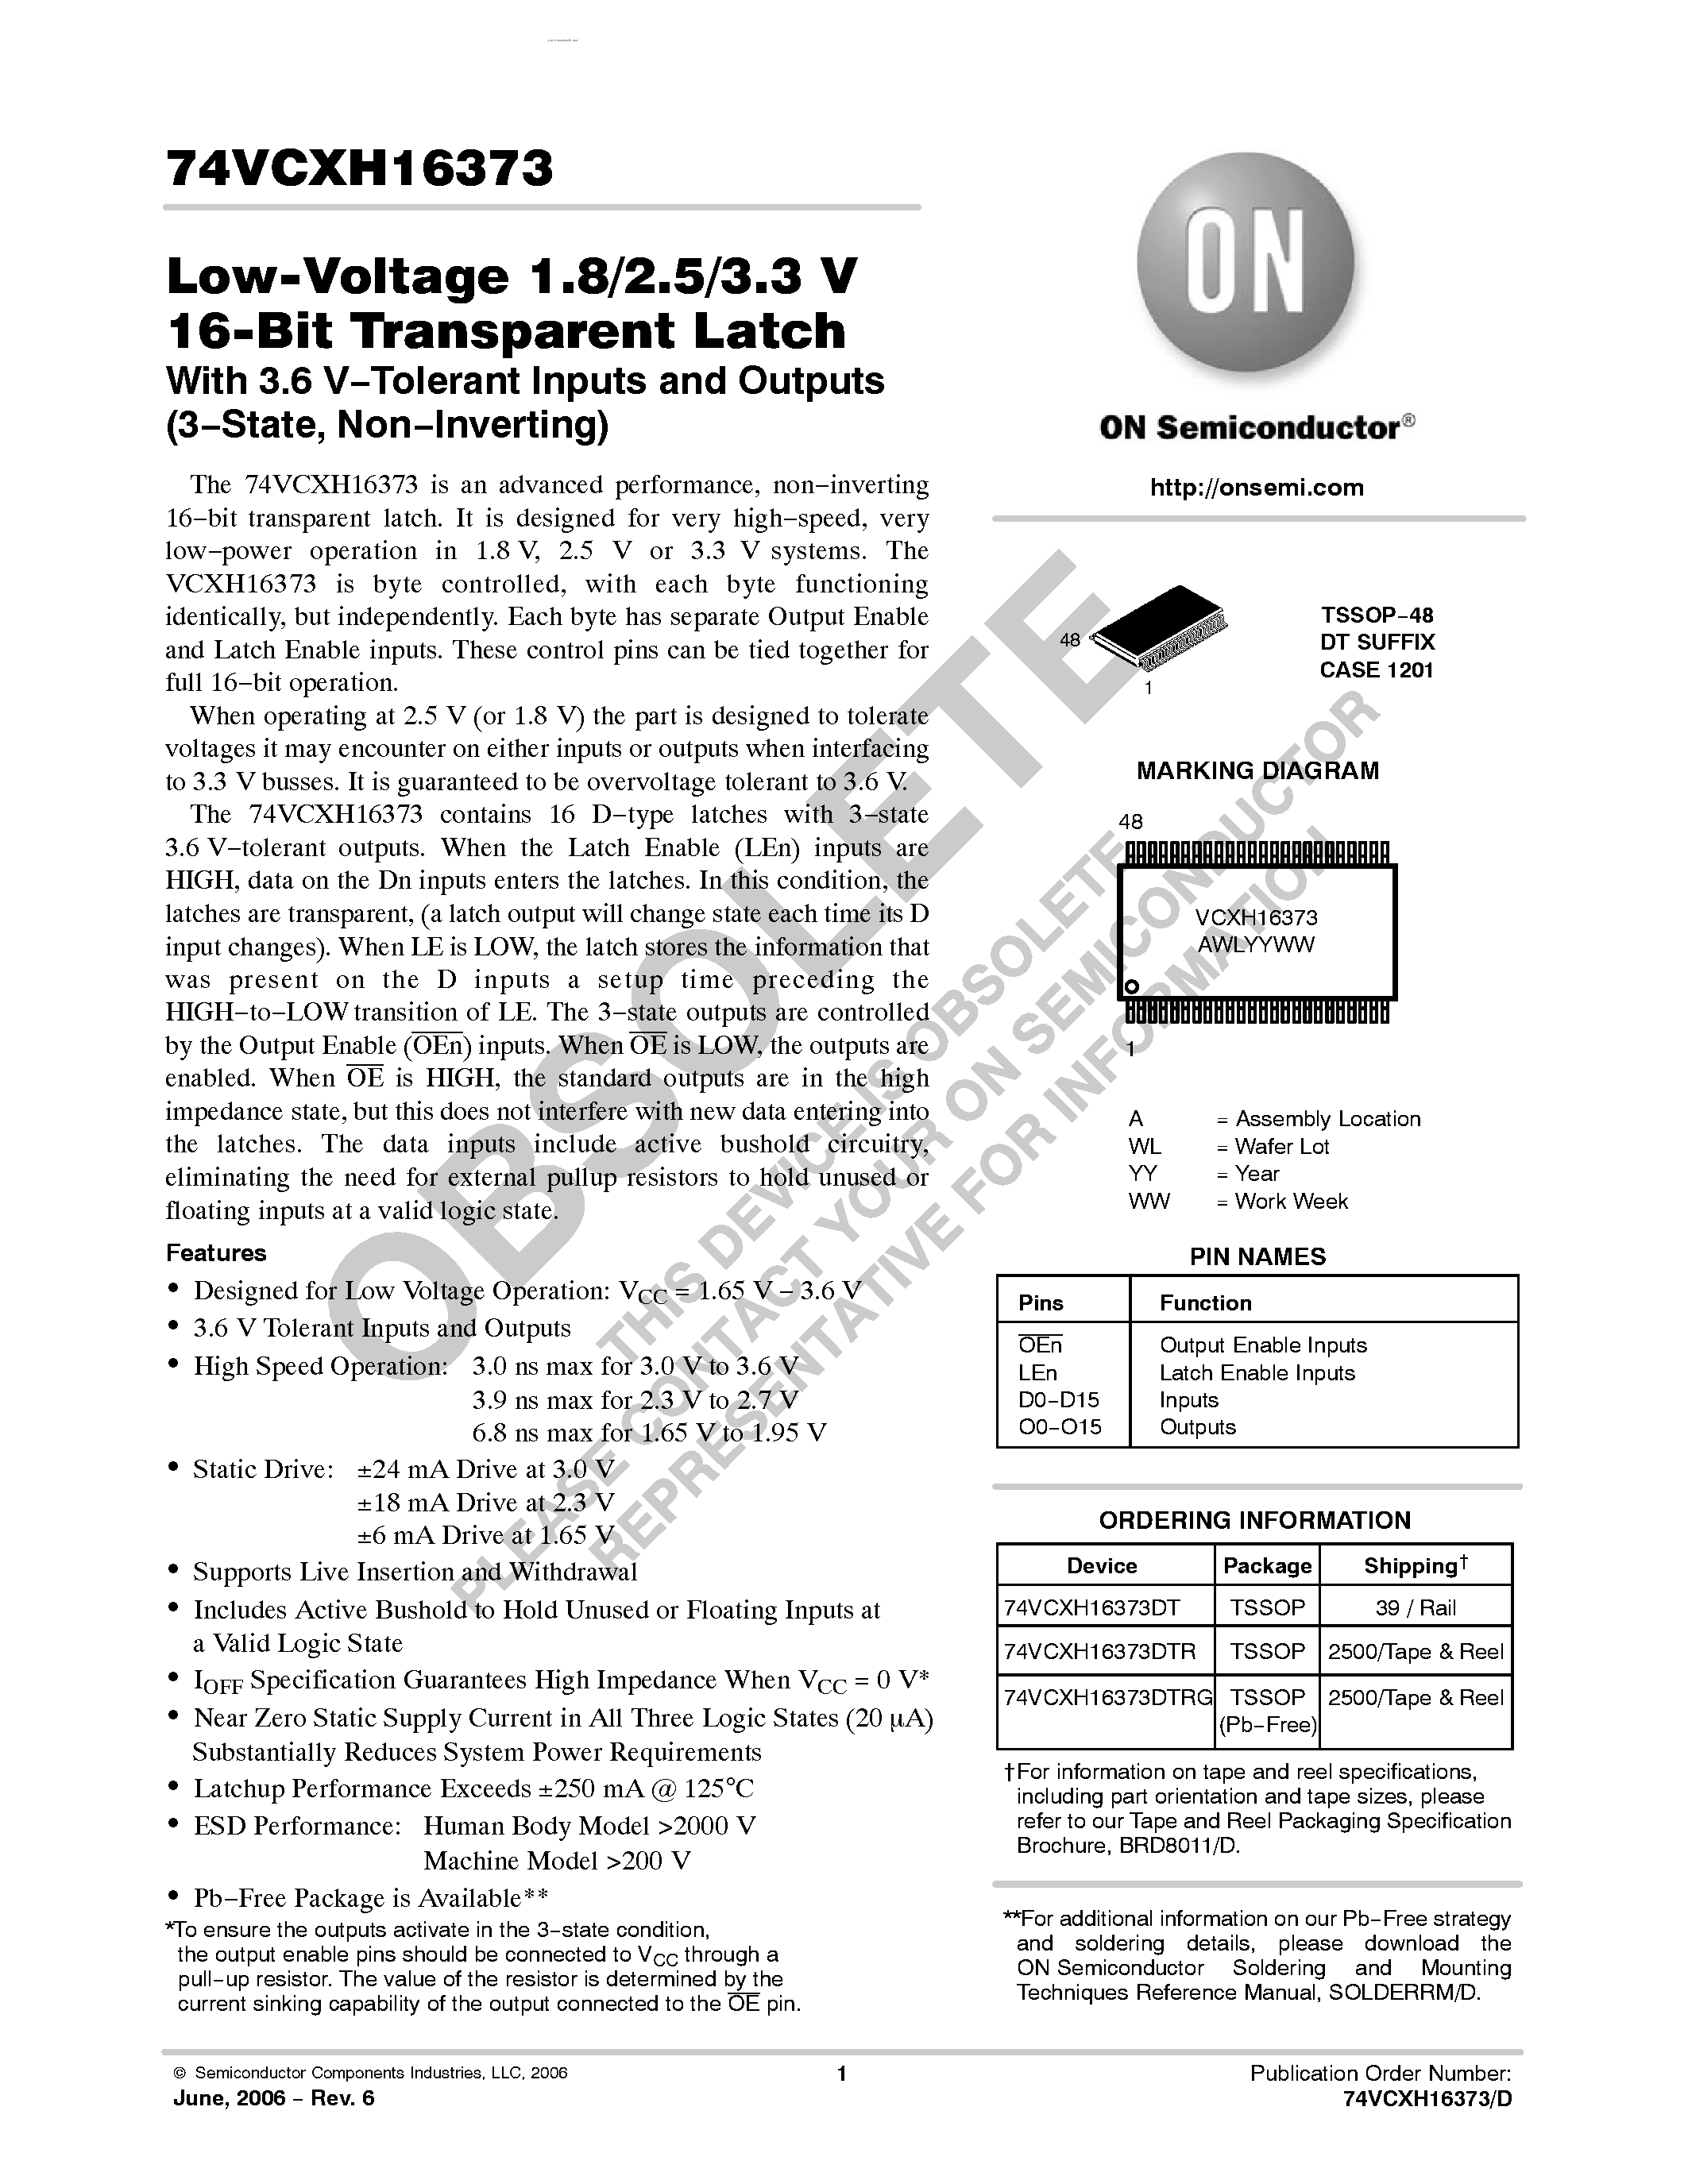 Datasheet 74VCXH16373 - Low-Voltage 1.8/2.5/3.3 V 16-Bit Transparent Latch page 1